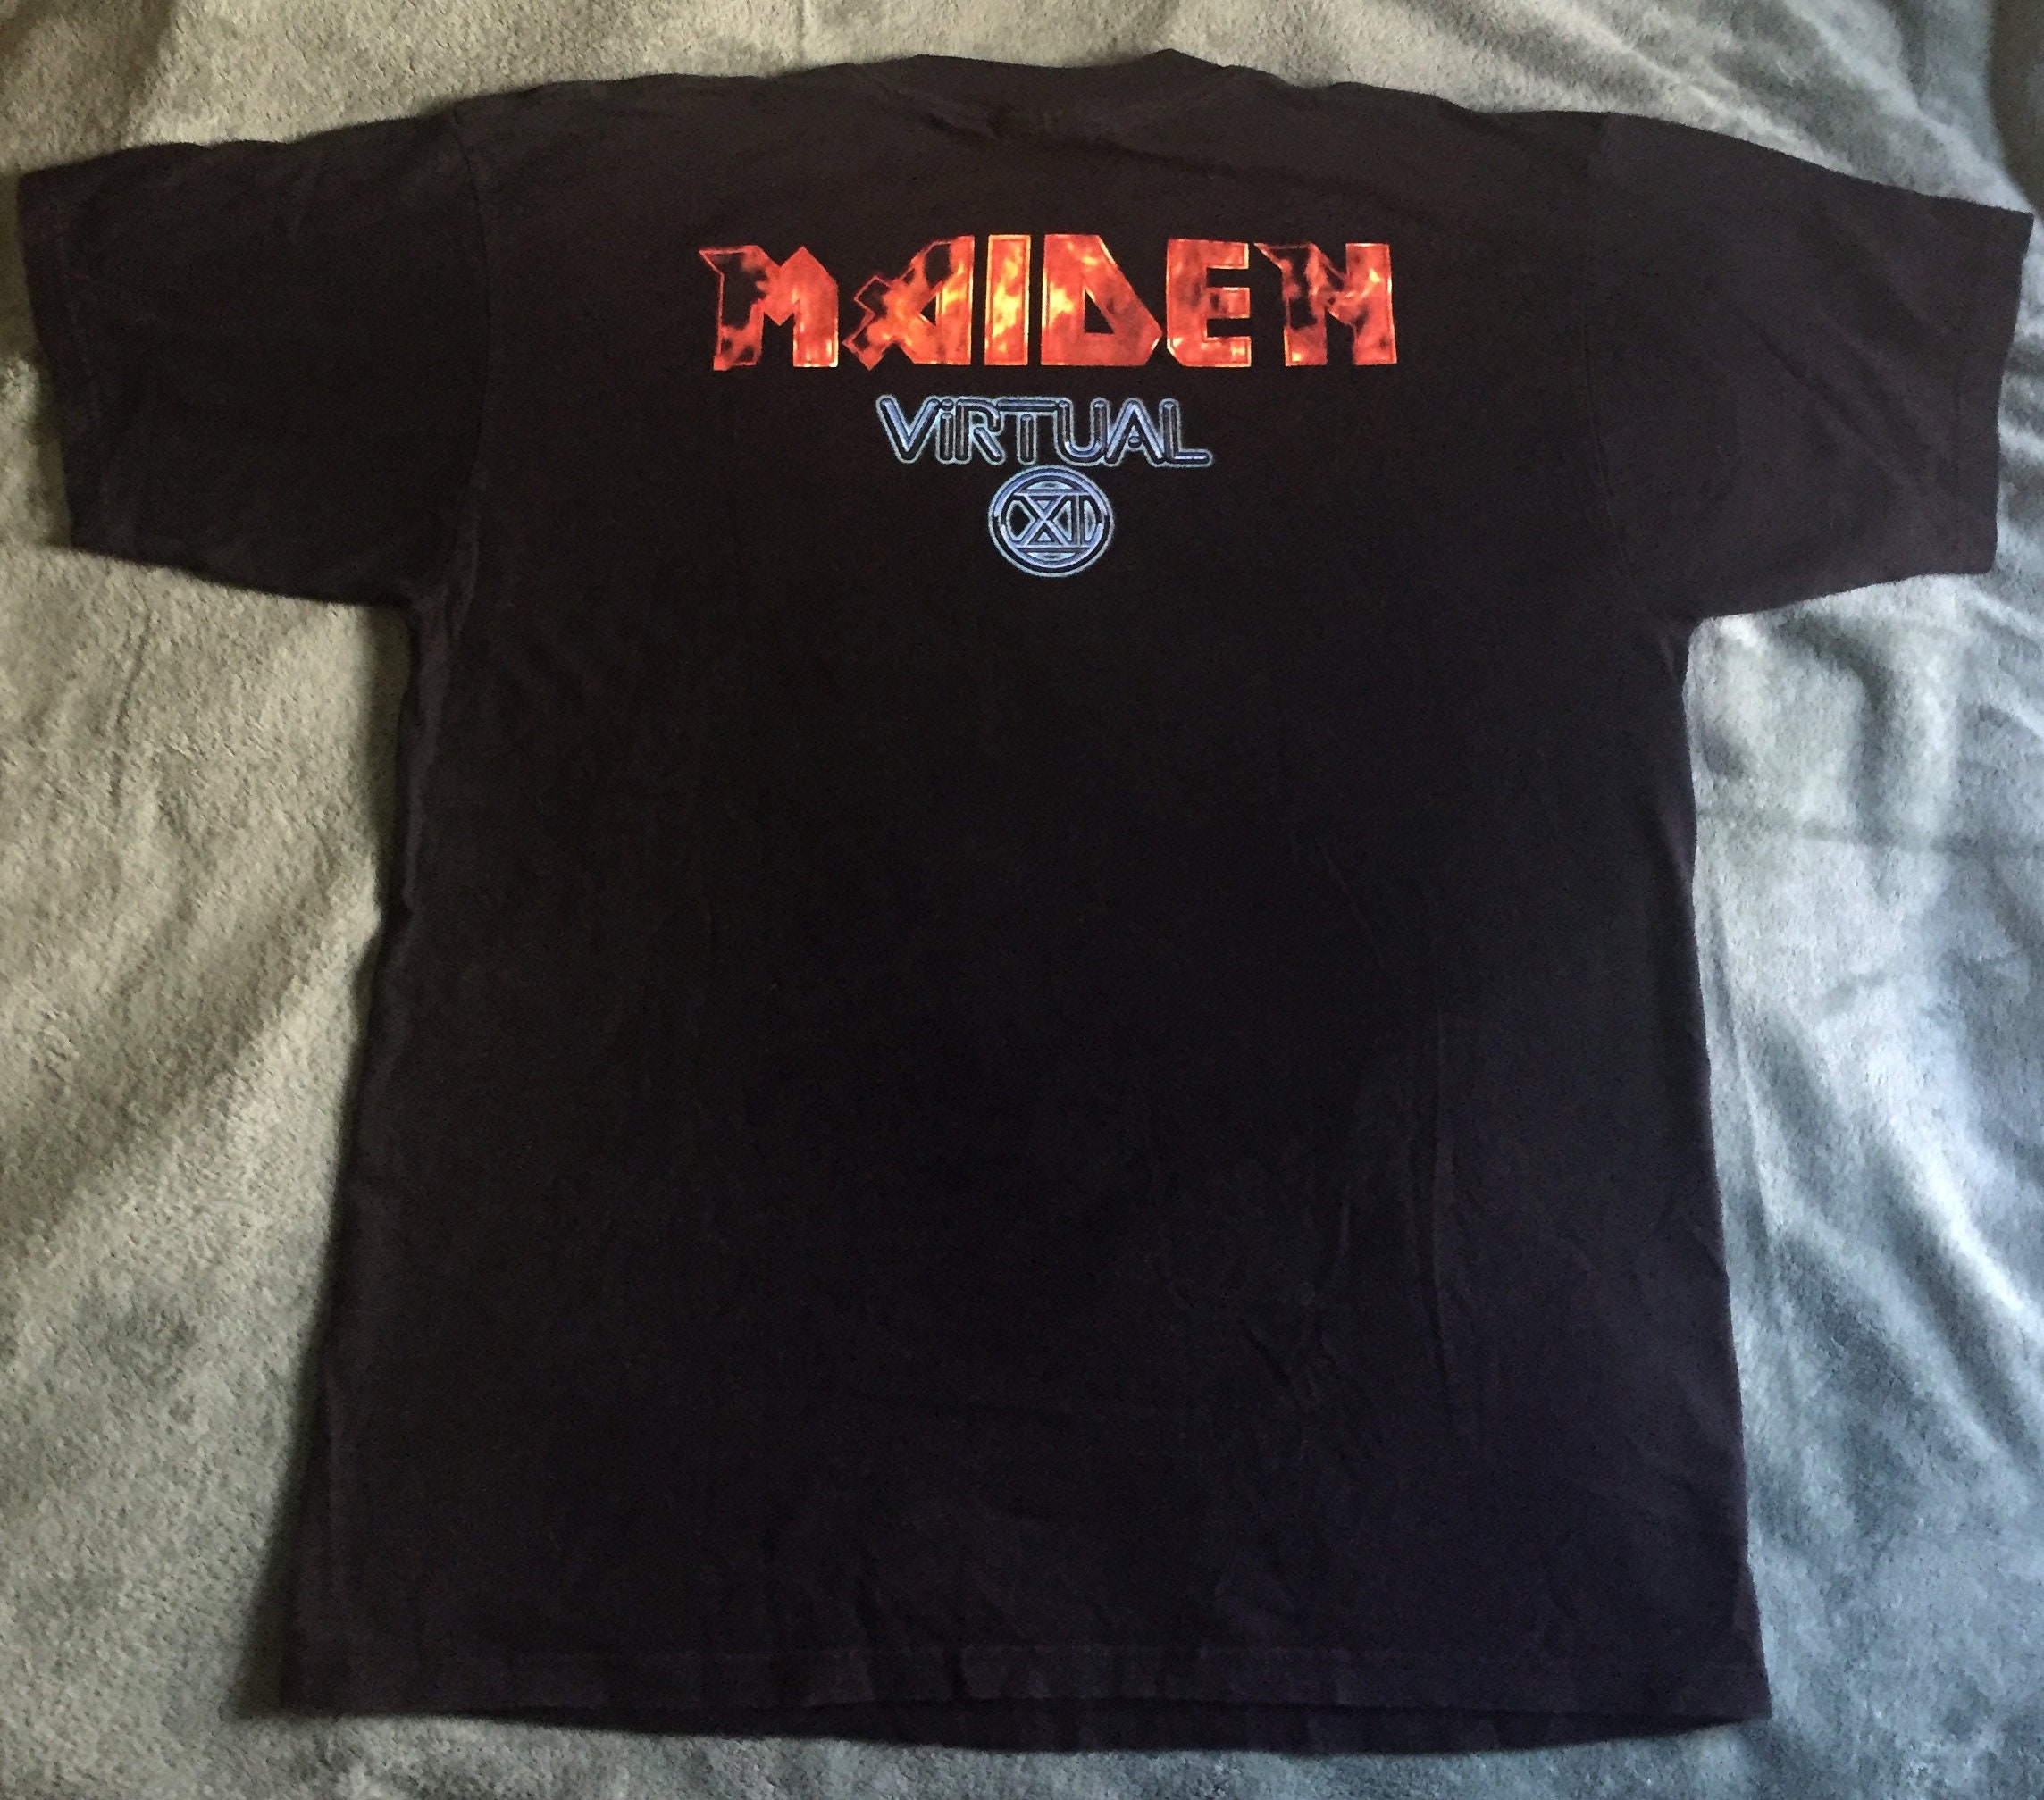 IRON MAIDEN Virtual X Tshirt Vintage Band T Shirt - Etsy